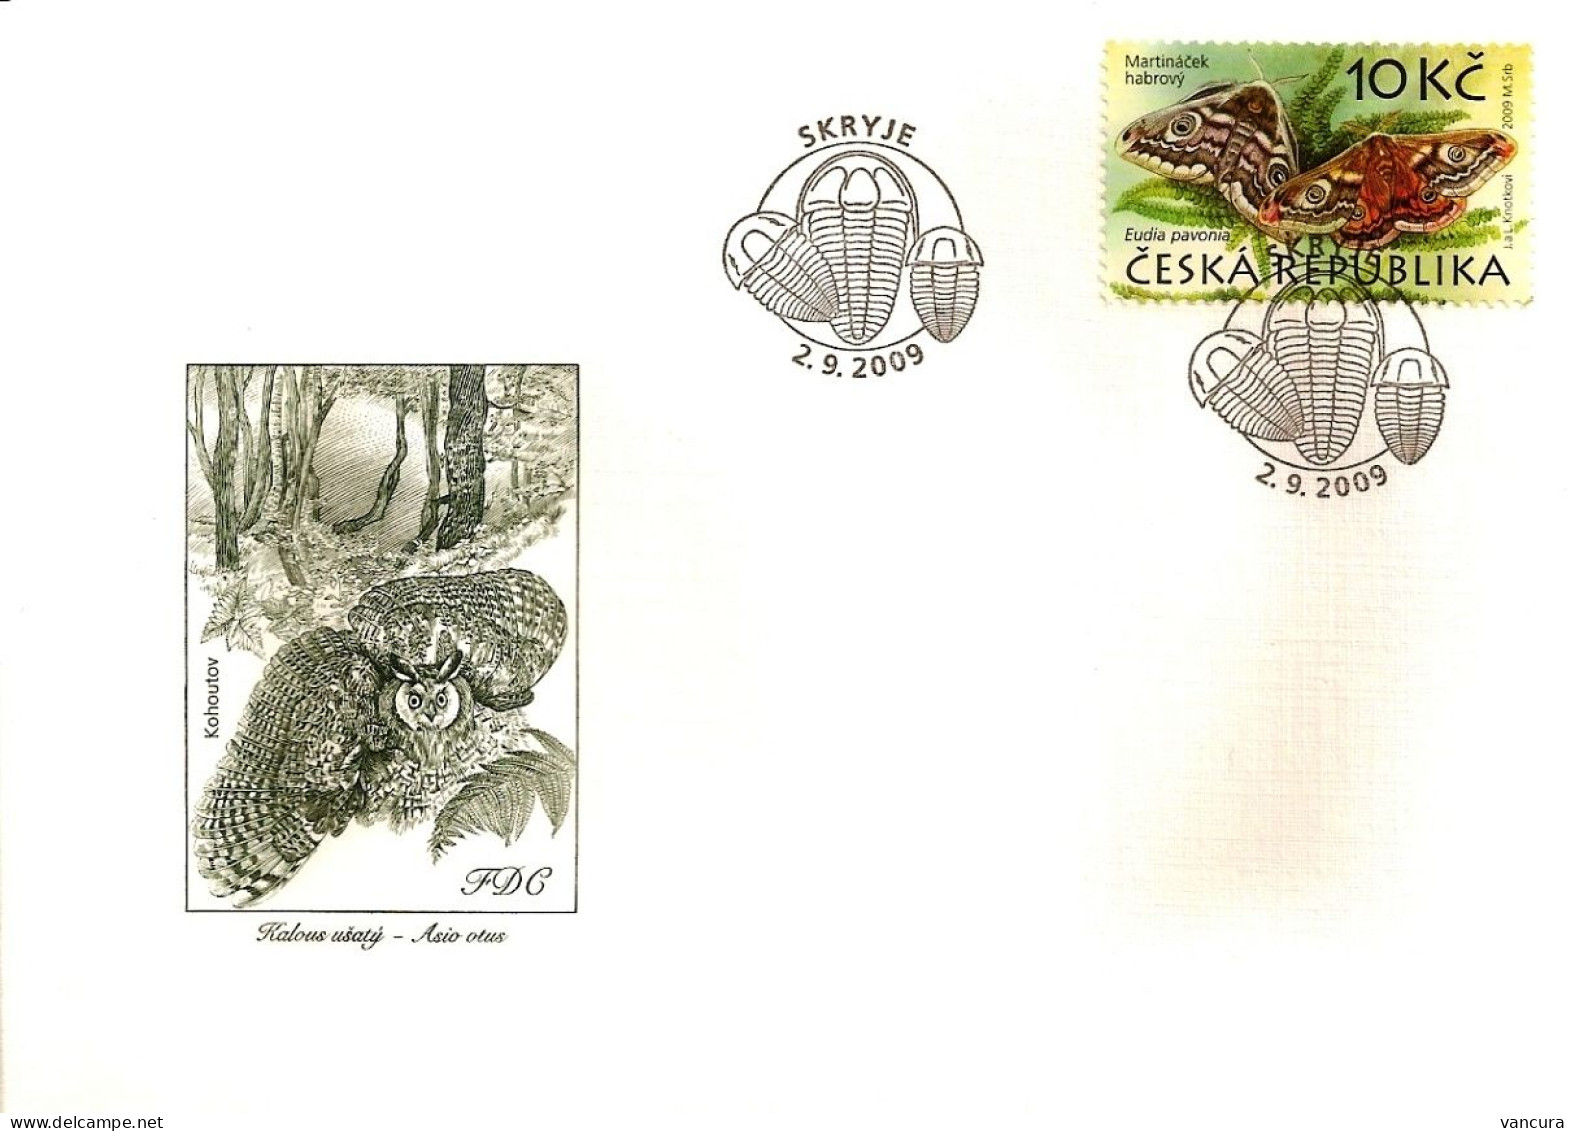 FDC 604 - 7 Czech Republic The Krivoklatsko Region - Trilobit Barn Owl Eagle Owl Deer Butterfly Black Stork Bat 2009 - Hiboux & Chouettes